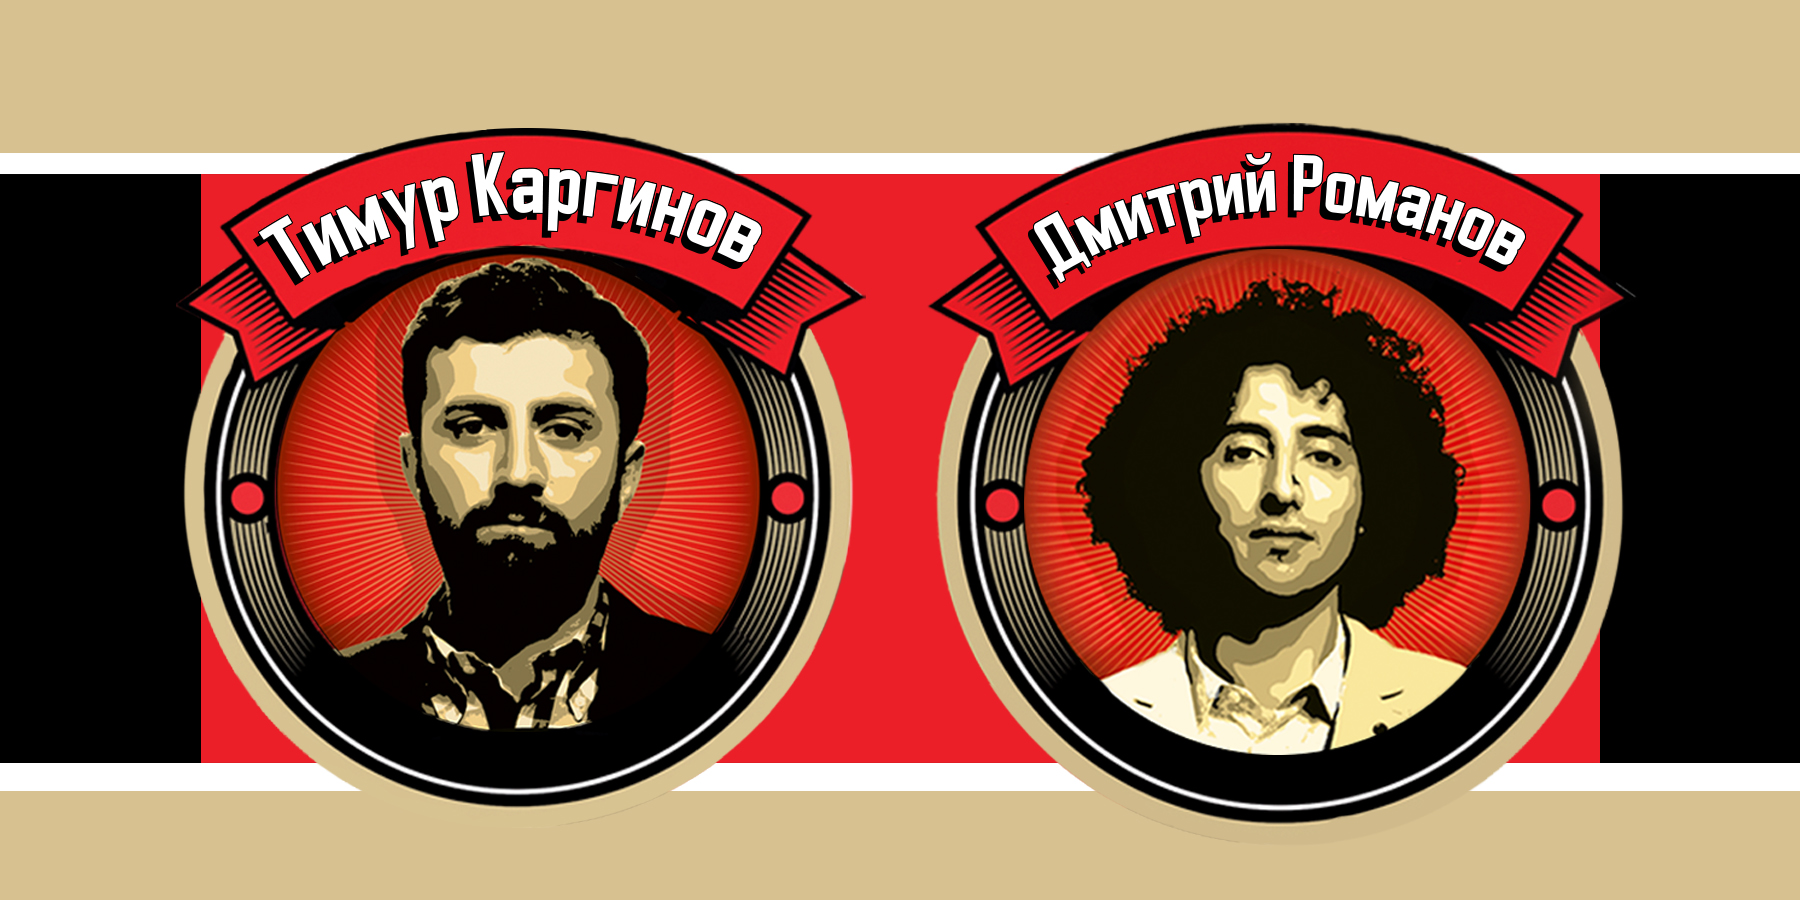 StandUp Show «Закрытый Микроfон»: Дмитрий Романов и Тимур Каргинов